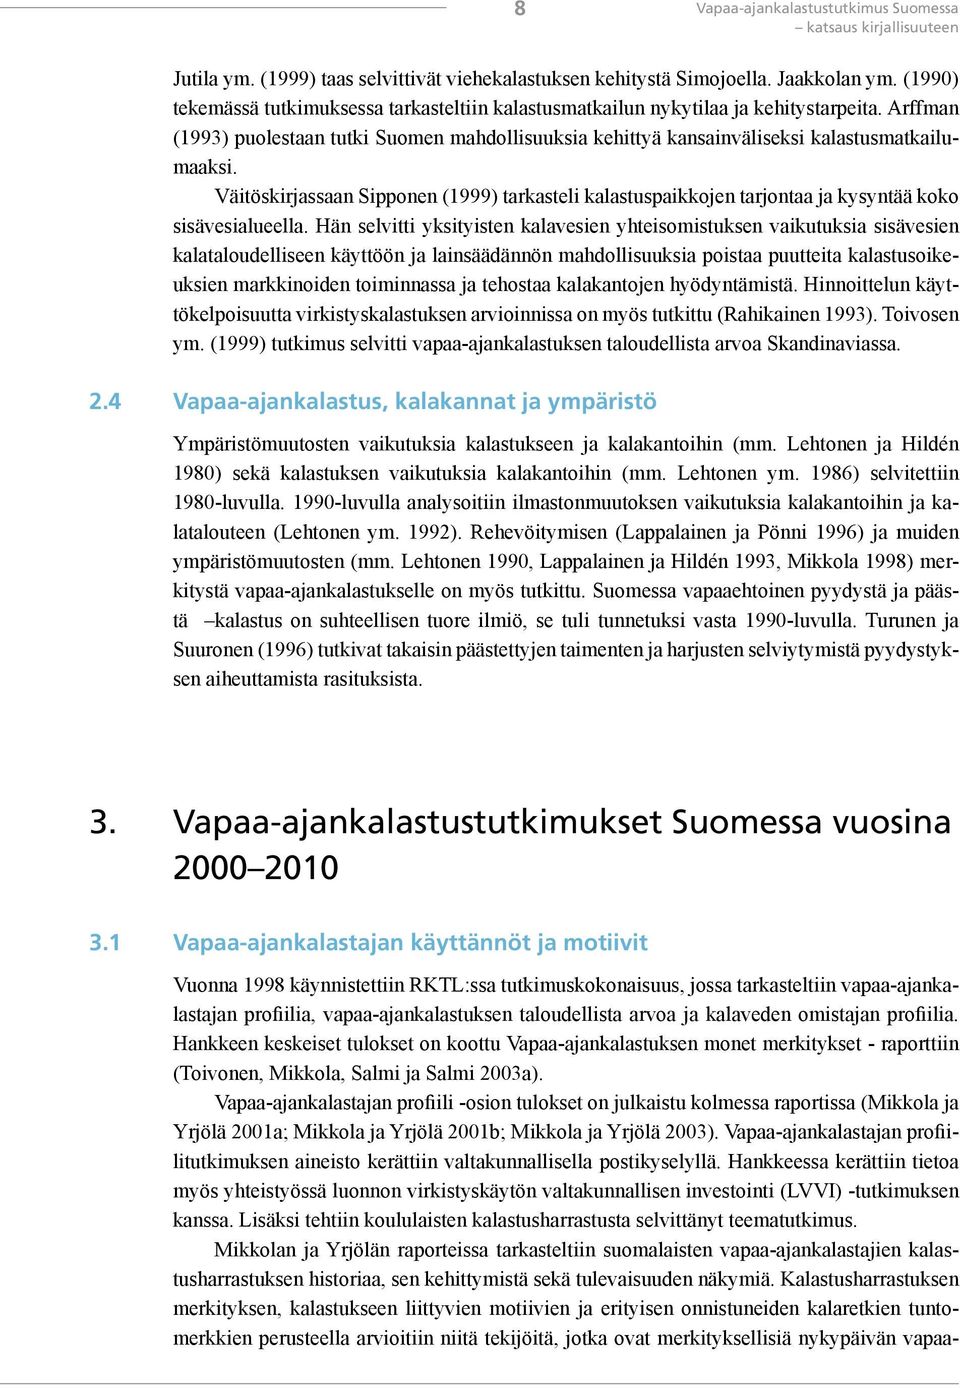 Väitöskirjassaan Sipponen (1999) tarkasteli kalastuspaikkojen tarjontaa ja kysyntää koko sisävesialueella.